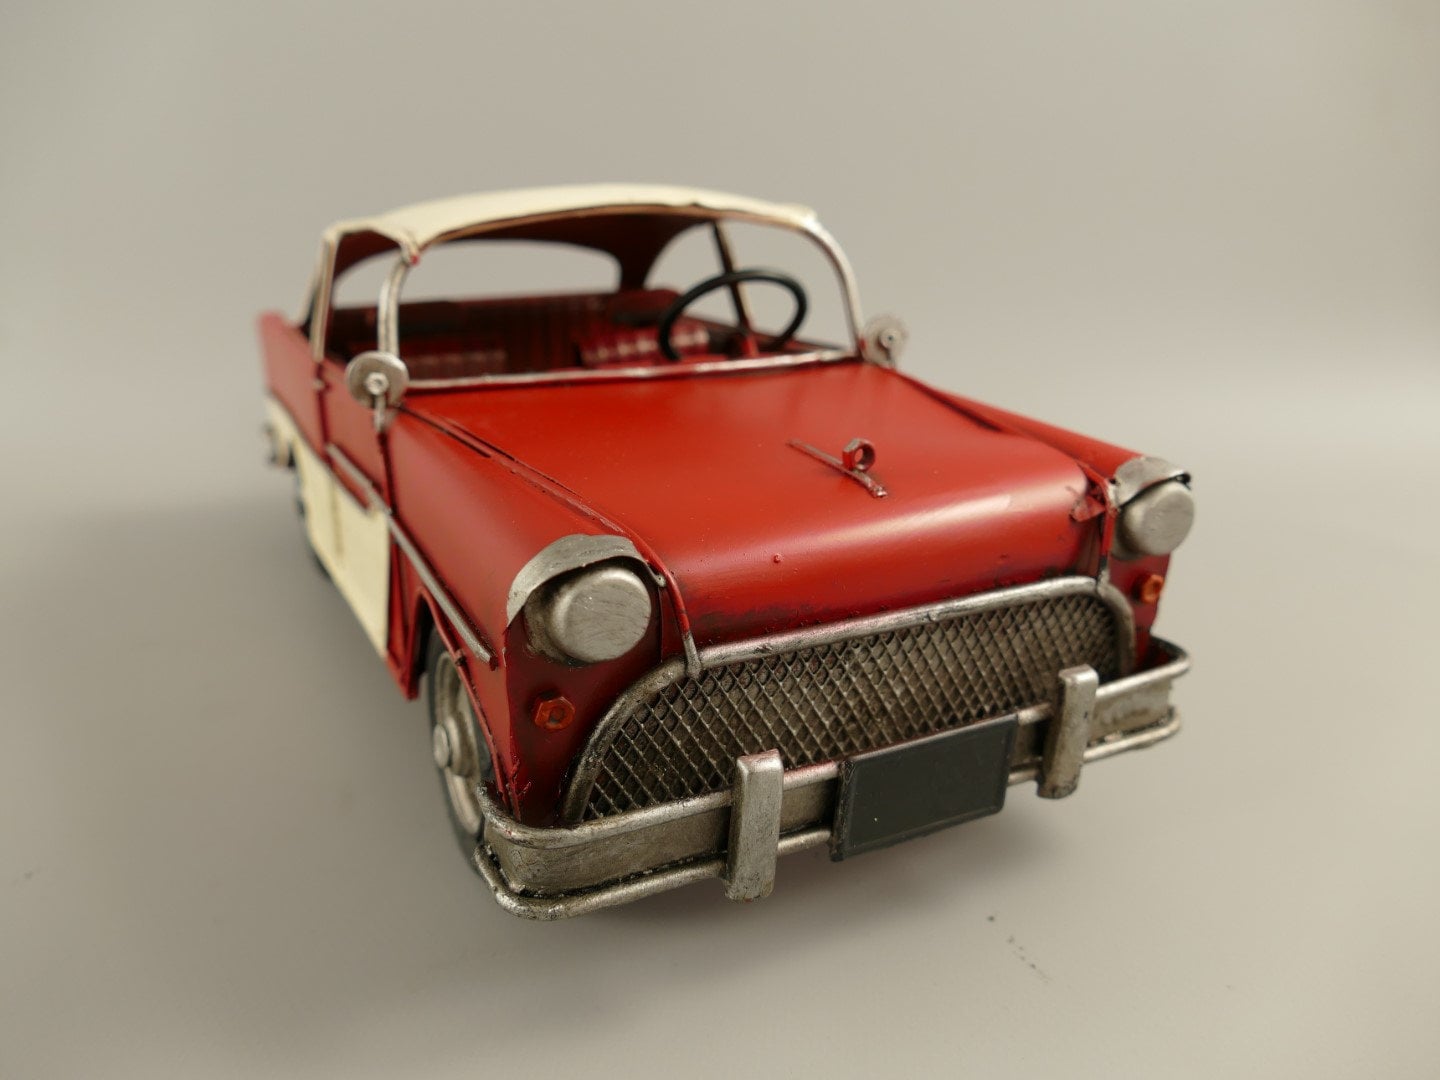 Red vintage car toy - .de